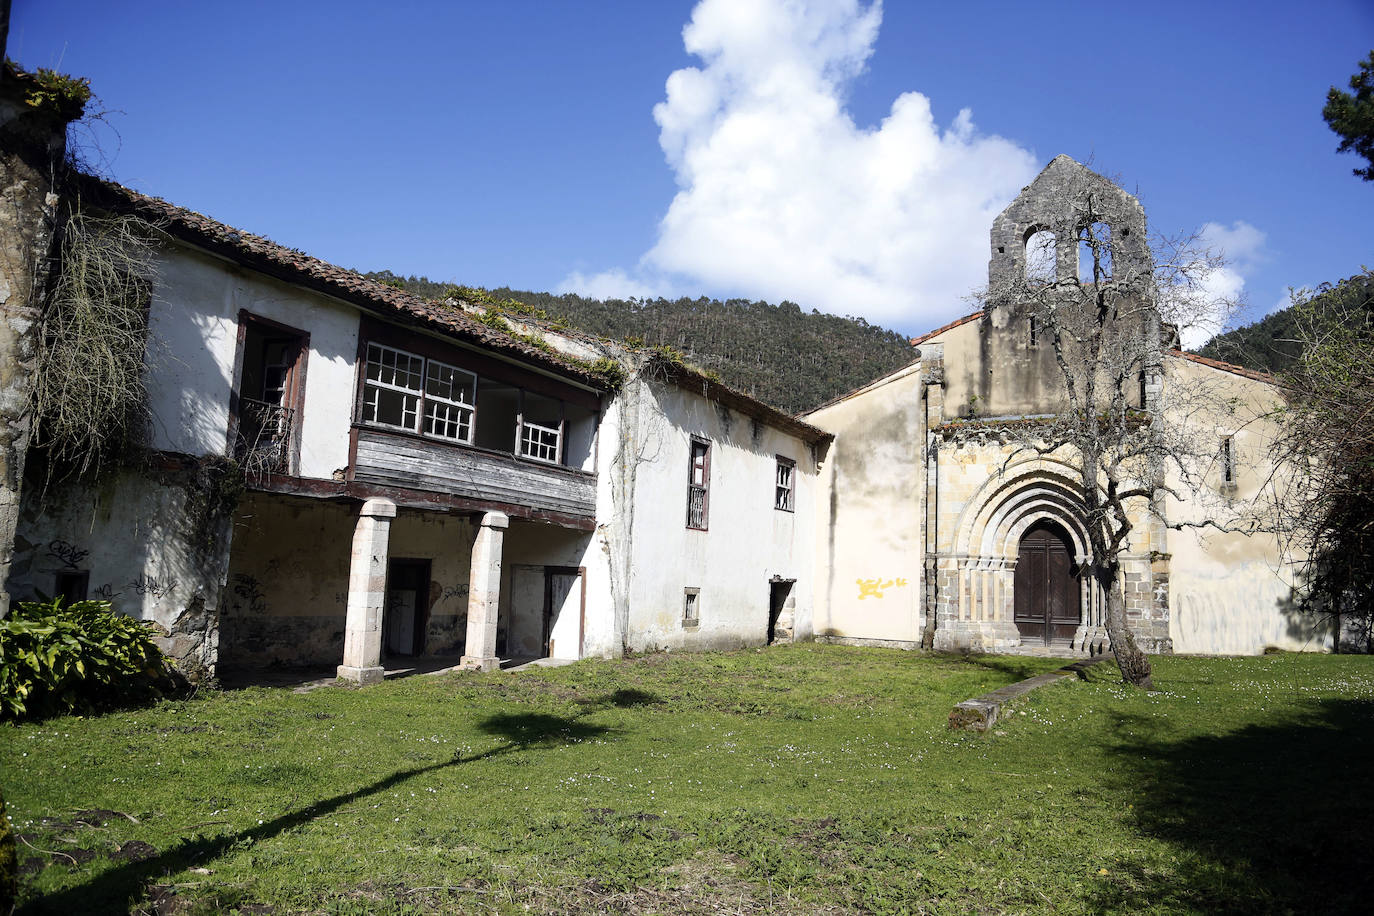 Monasterio de San Antolín de Bedón. BIC. Conjunto monacal ubicado en el concejo de Llanes. Actualmente, el conjunto está formado por la iglesia construida a principios del siglo XIII y varias casas en ruinas de construcción posterior.